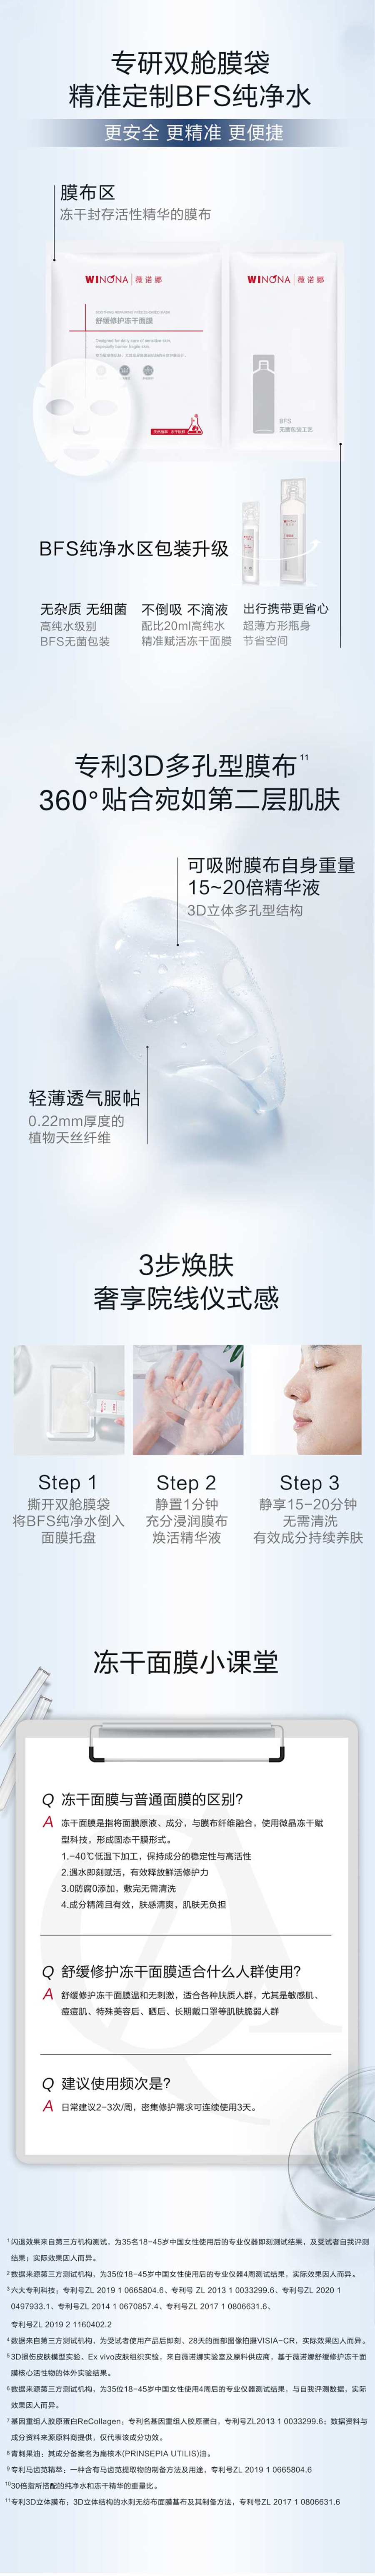 中國薇諾娜(WINONA)舒緩修護凍乾面膜-單片 敏感肌補水保濕修護屏障舒緩滋潤 【直降疊券疊滿贈】拉新價體驗價 限量200件